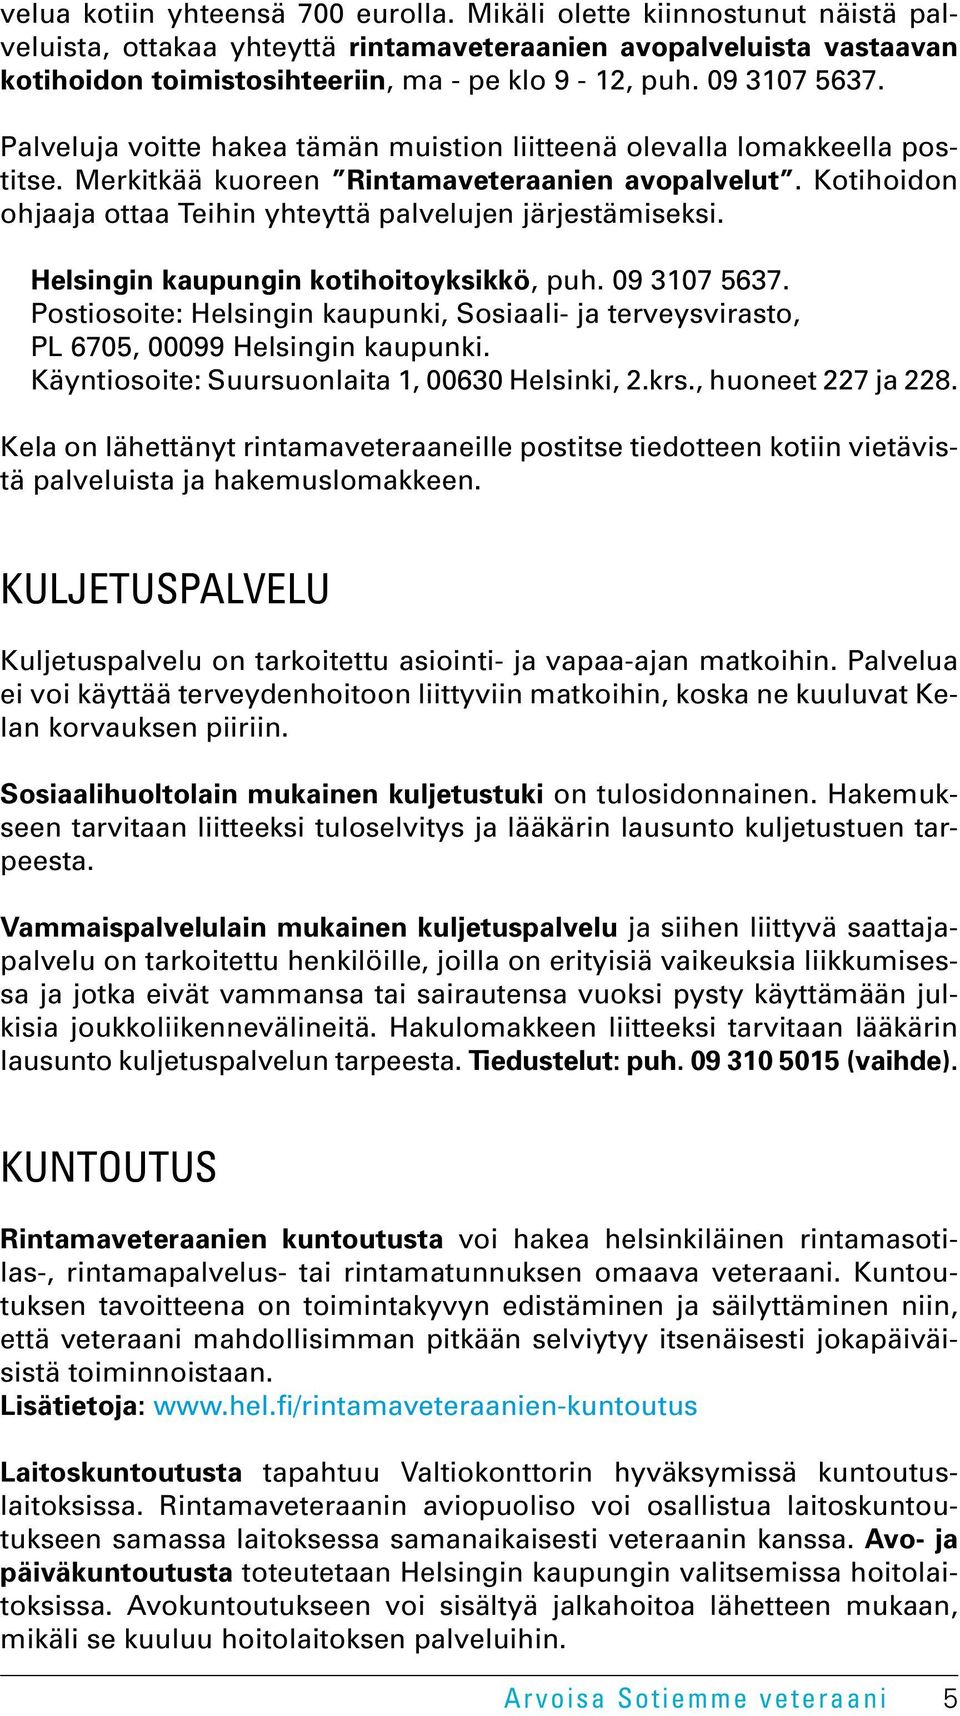 Kotihoidon ohjaaja ottaa Teihin yhteyttä palvelujen järjestämiseksi. Helsingin kaupungin kotihoitoyksikkö, puh. 09 3107 5637.